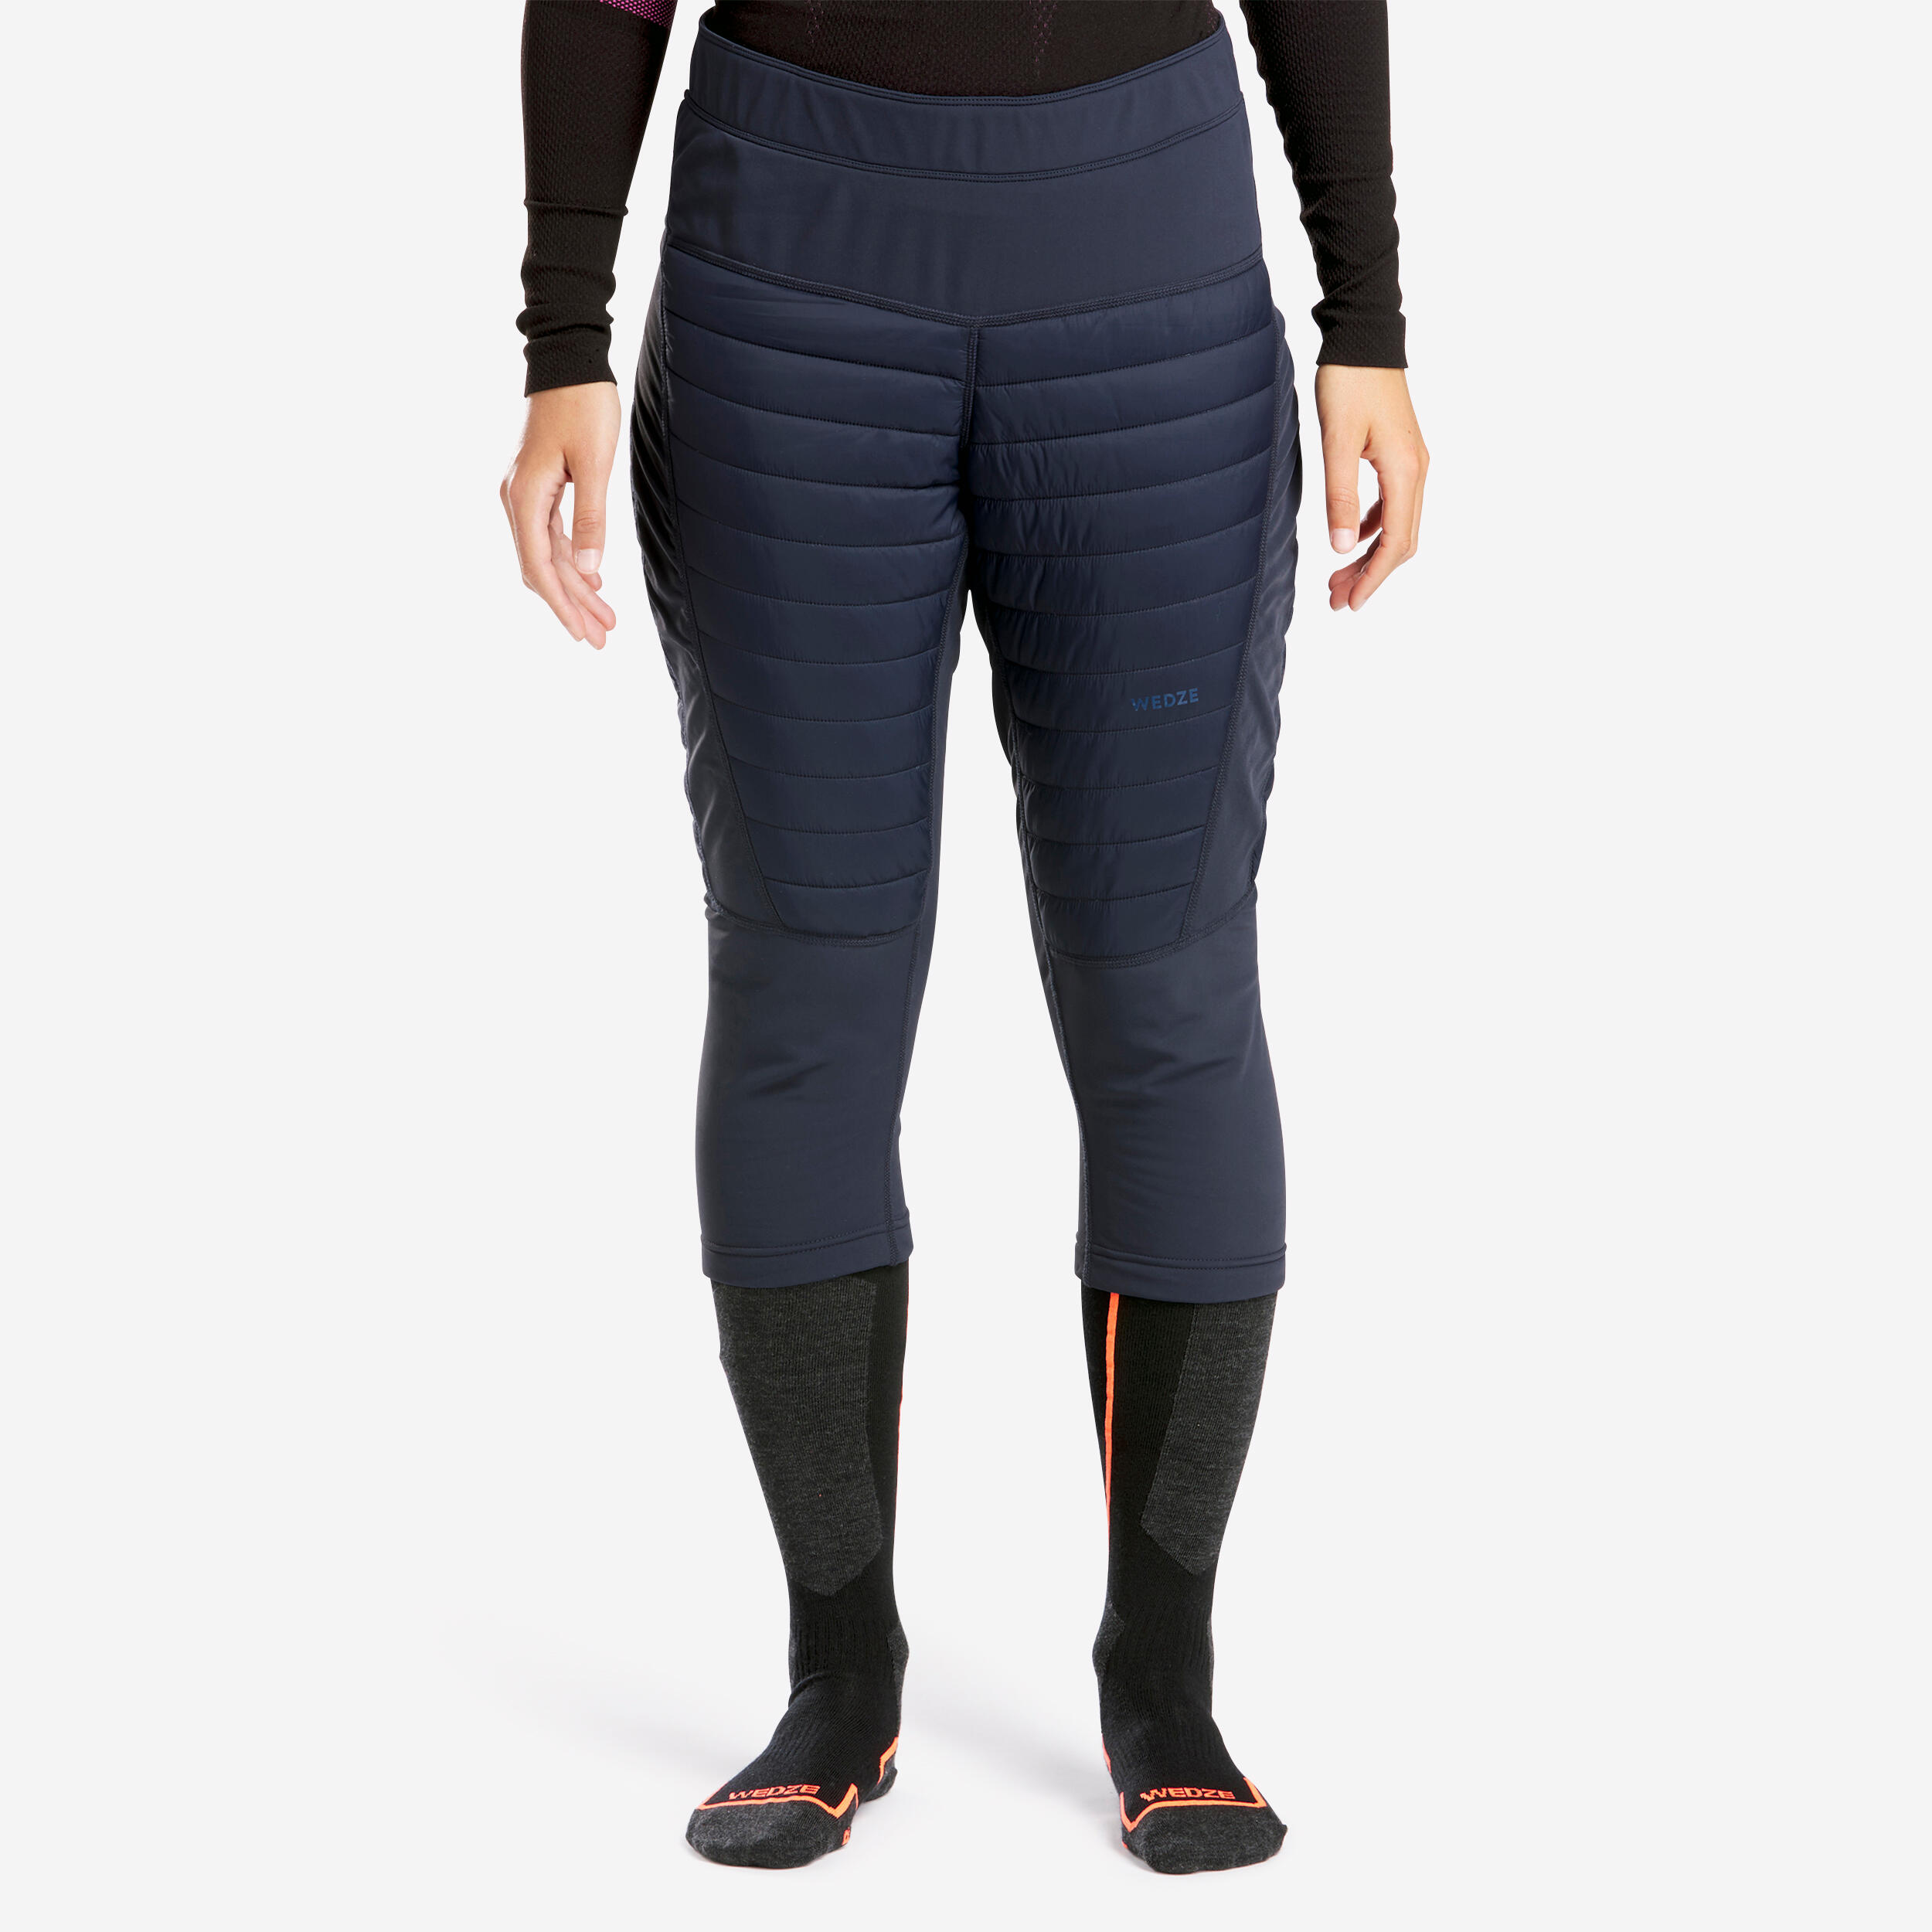 Base Layer Ski Pants by Aztech Mountain for $40